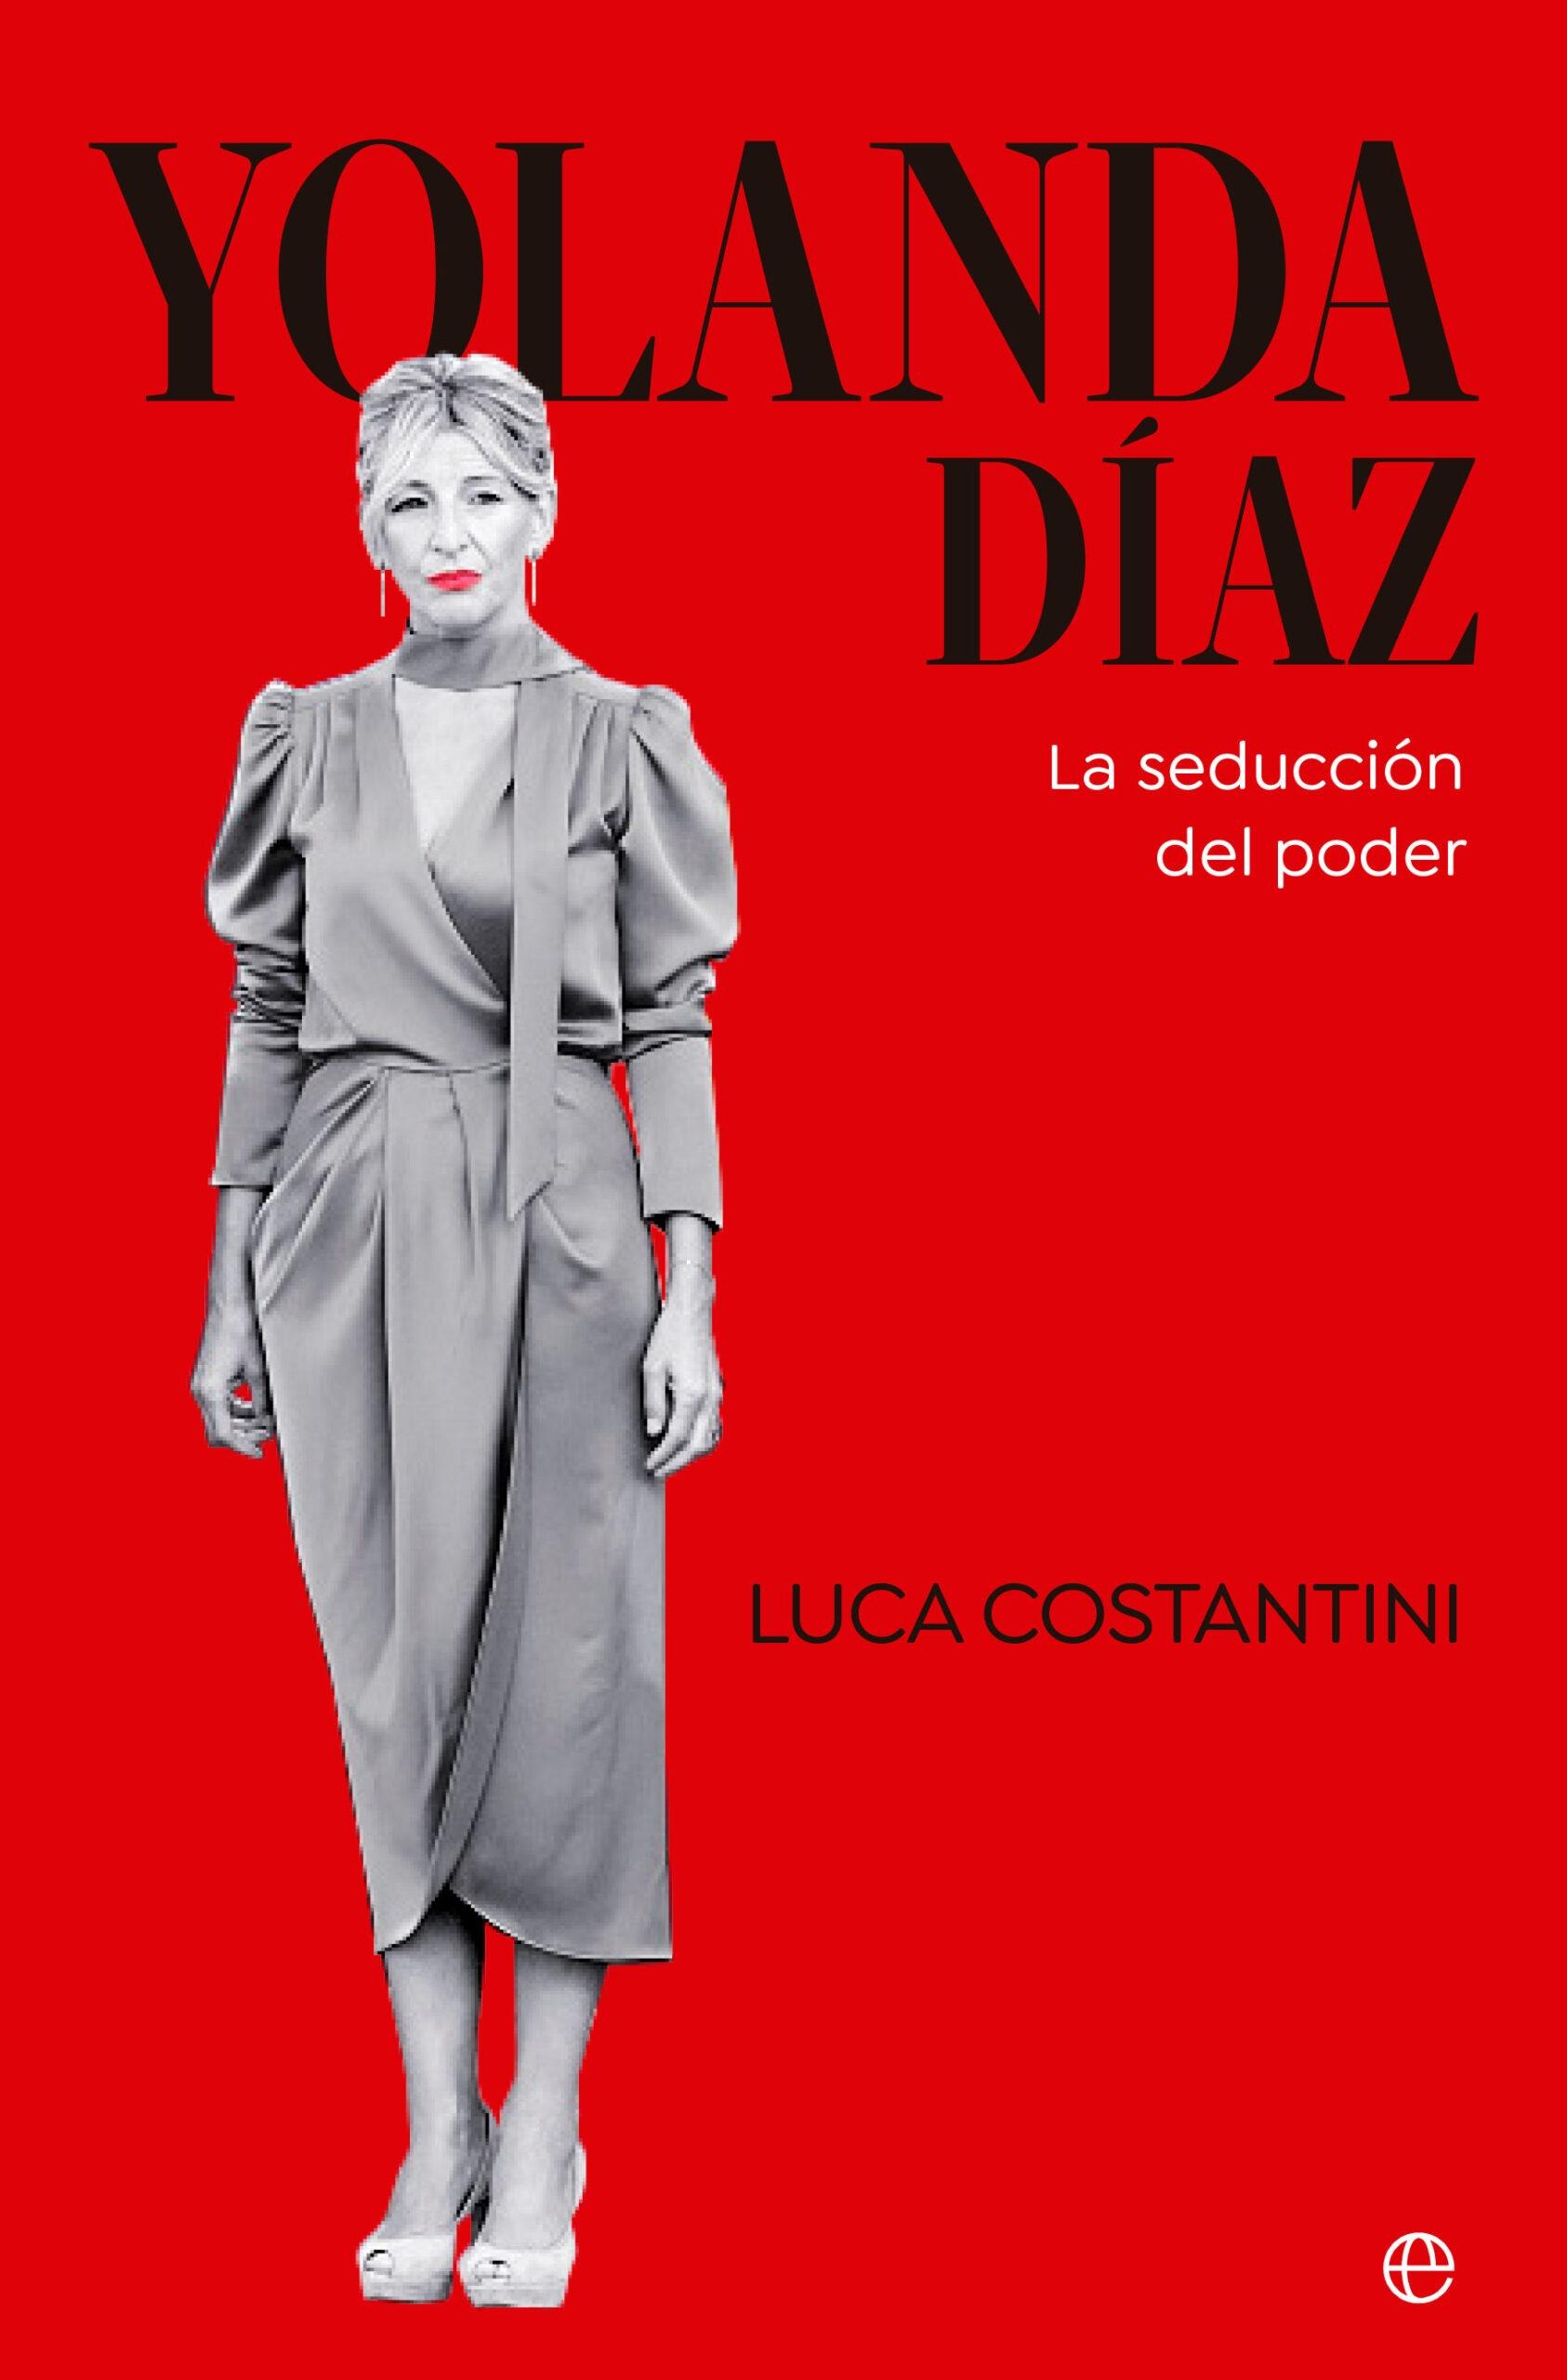 Yolanda Díaz "La Seducción del Poder"